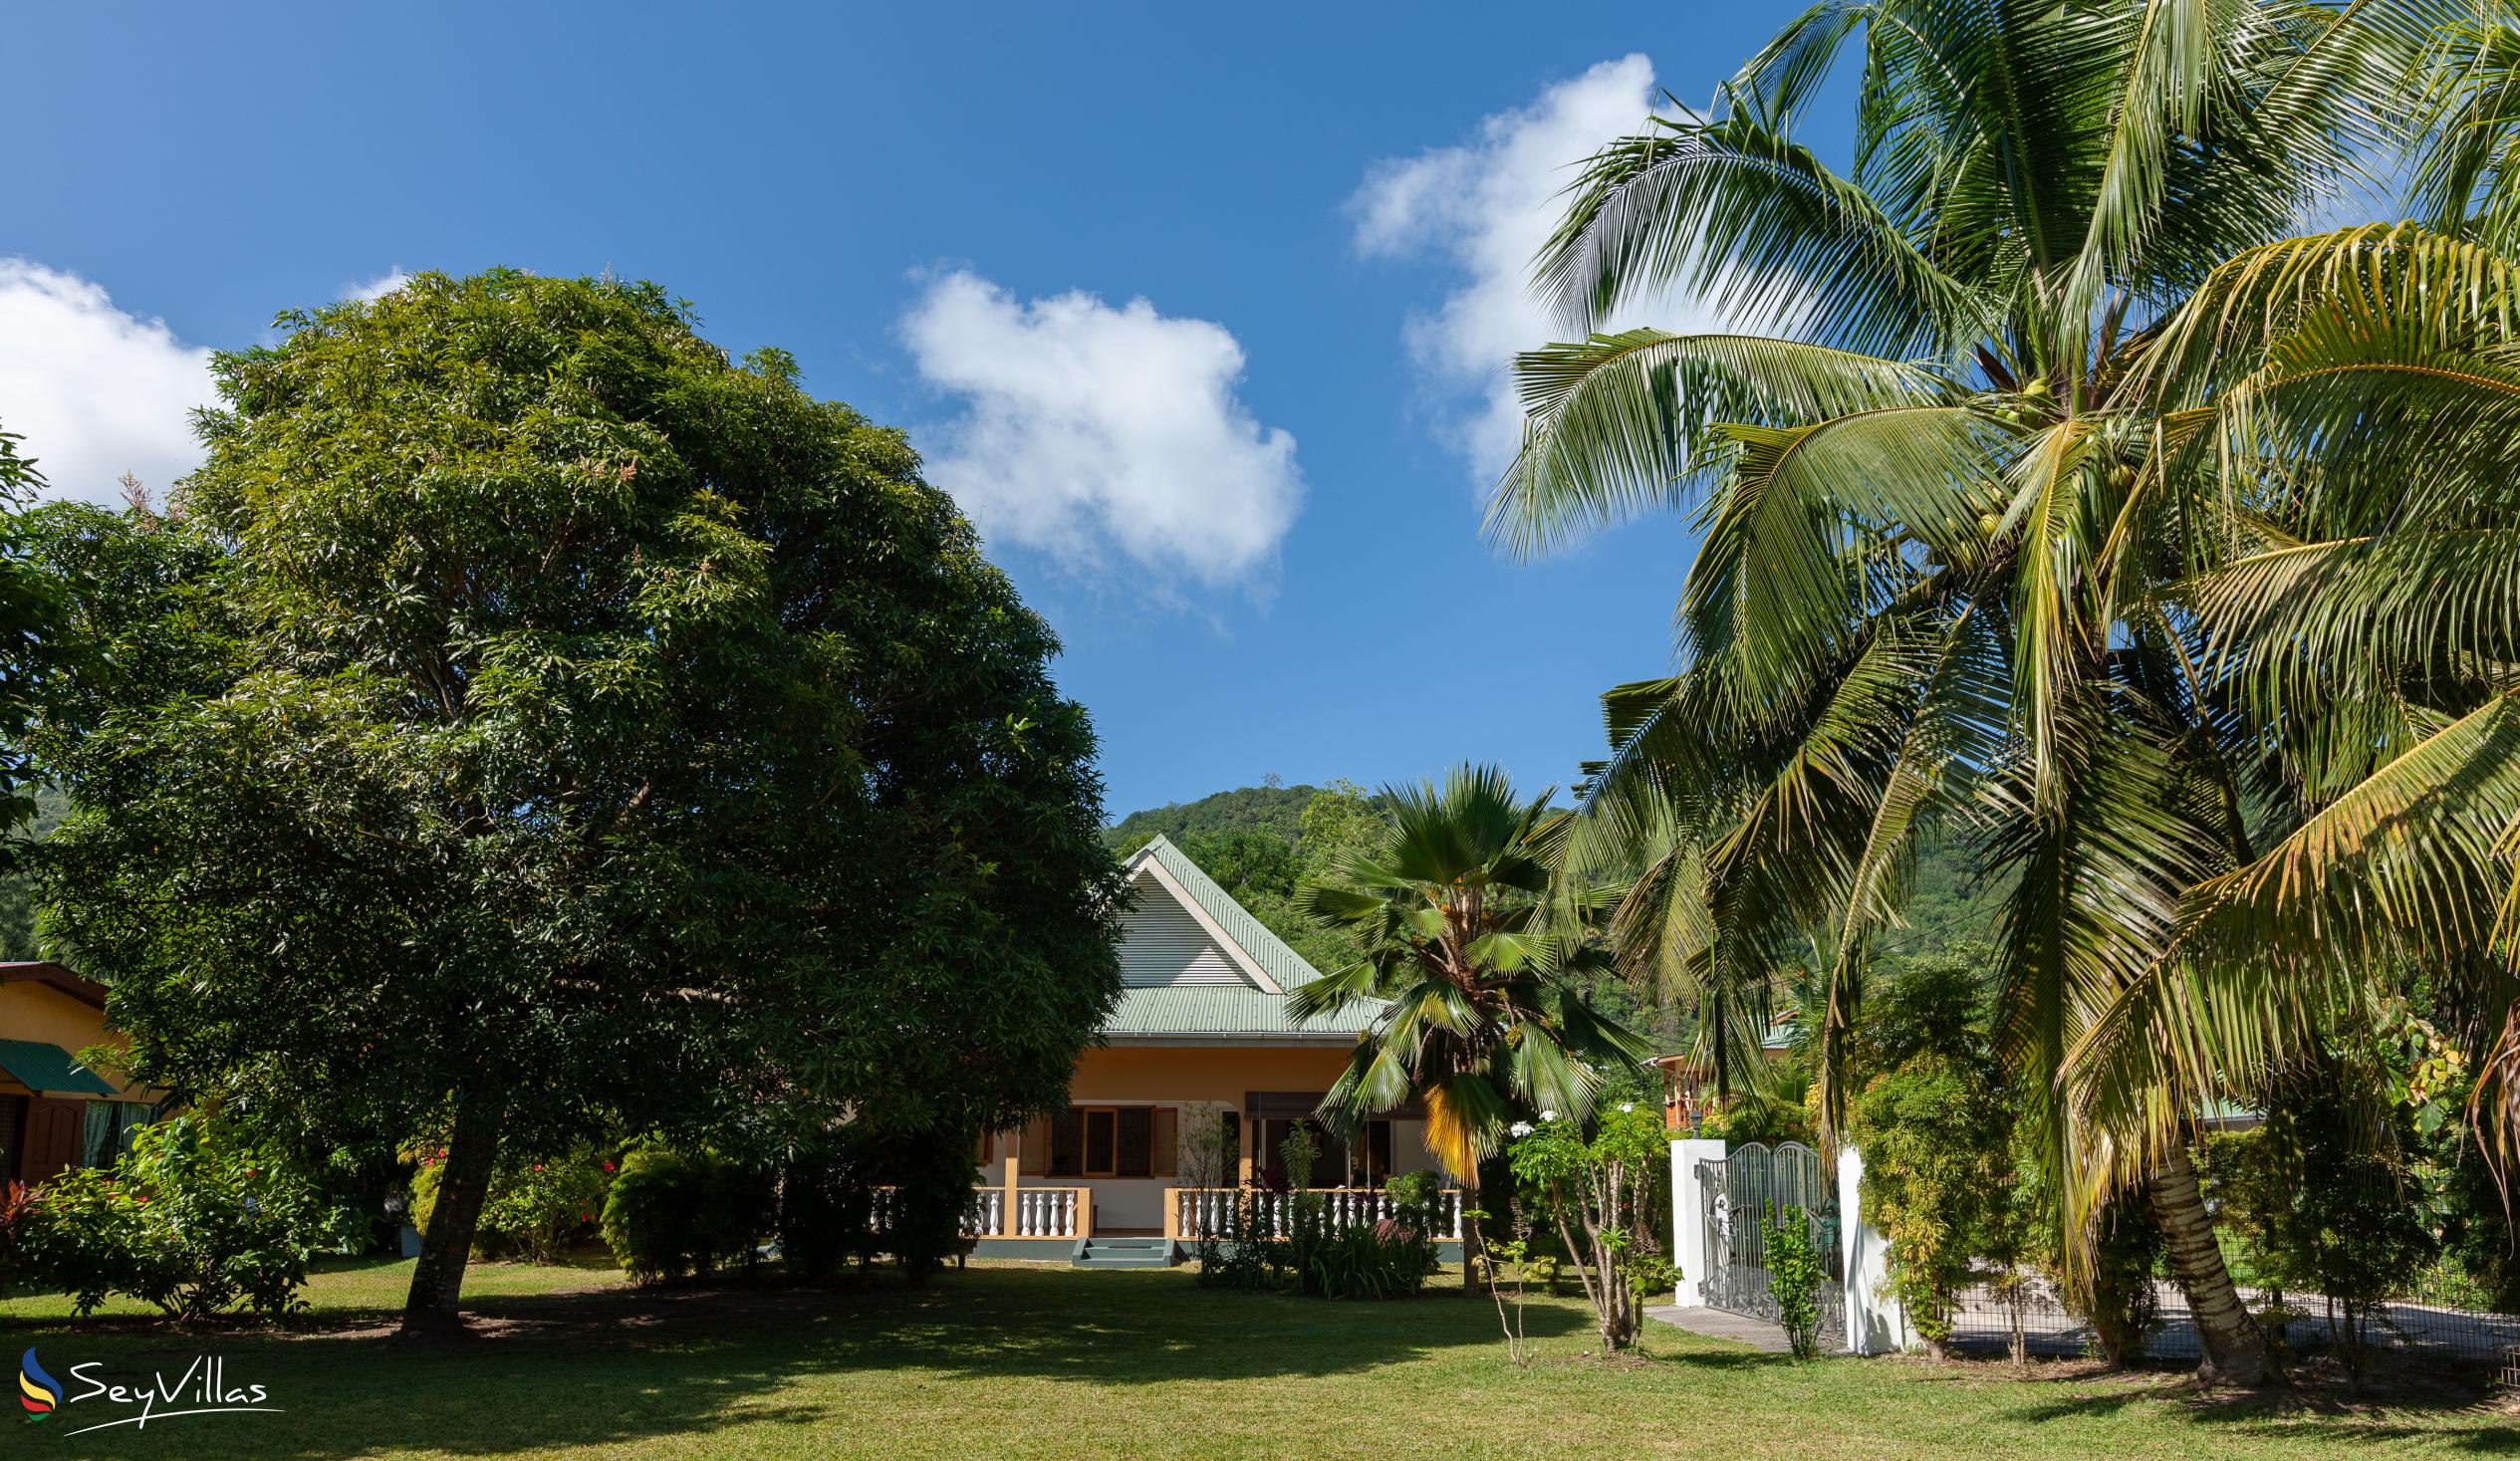 Foto 5: Chez Marlin - Esterno - Praslin (Seychelles)